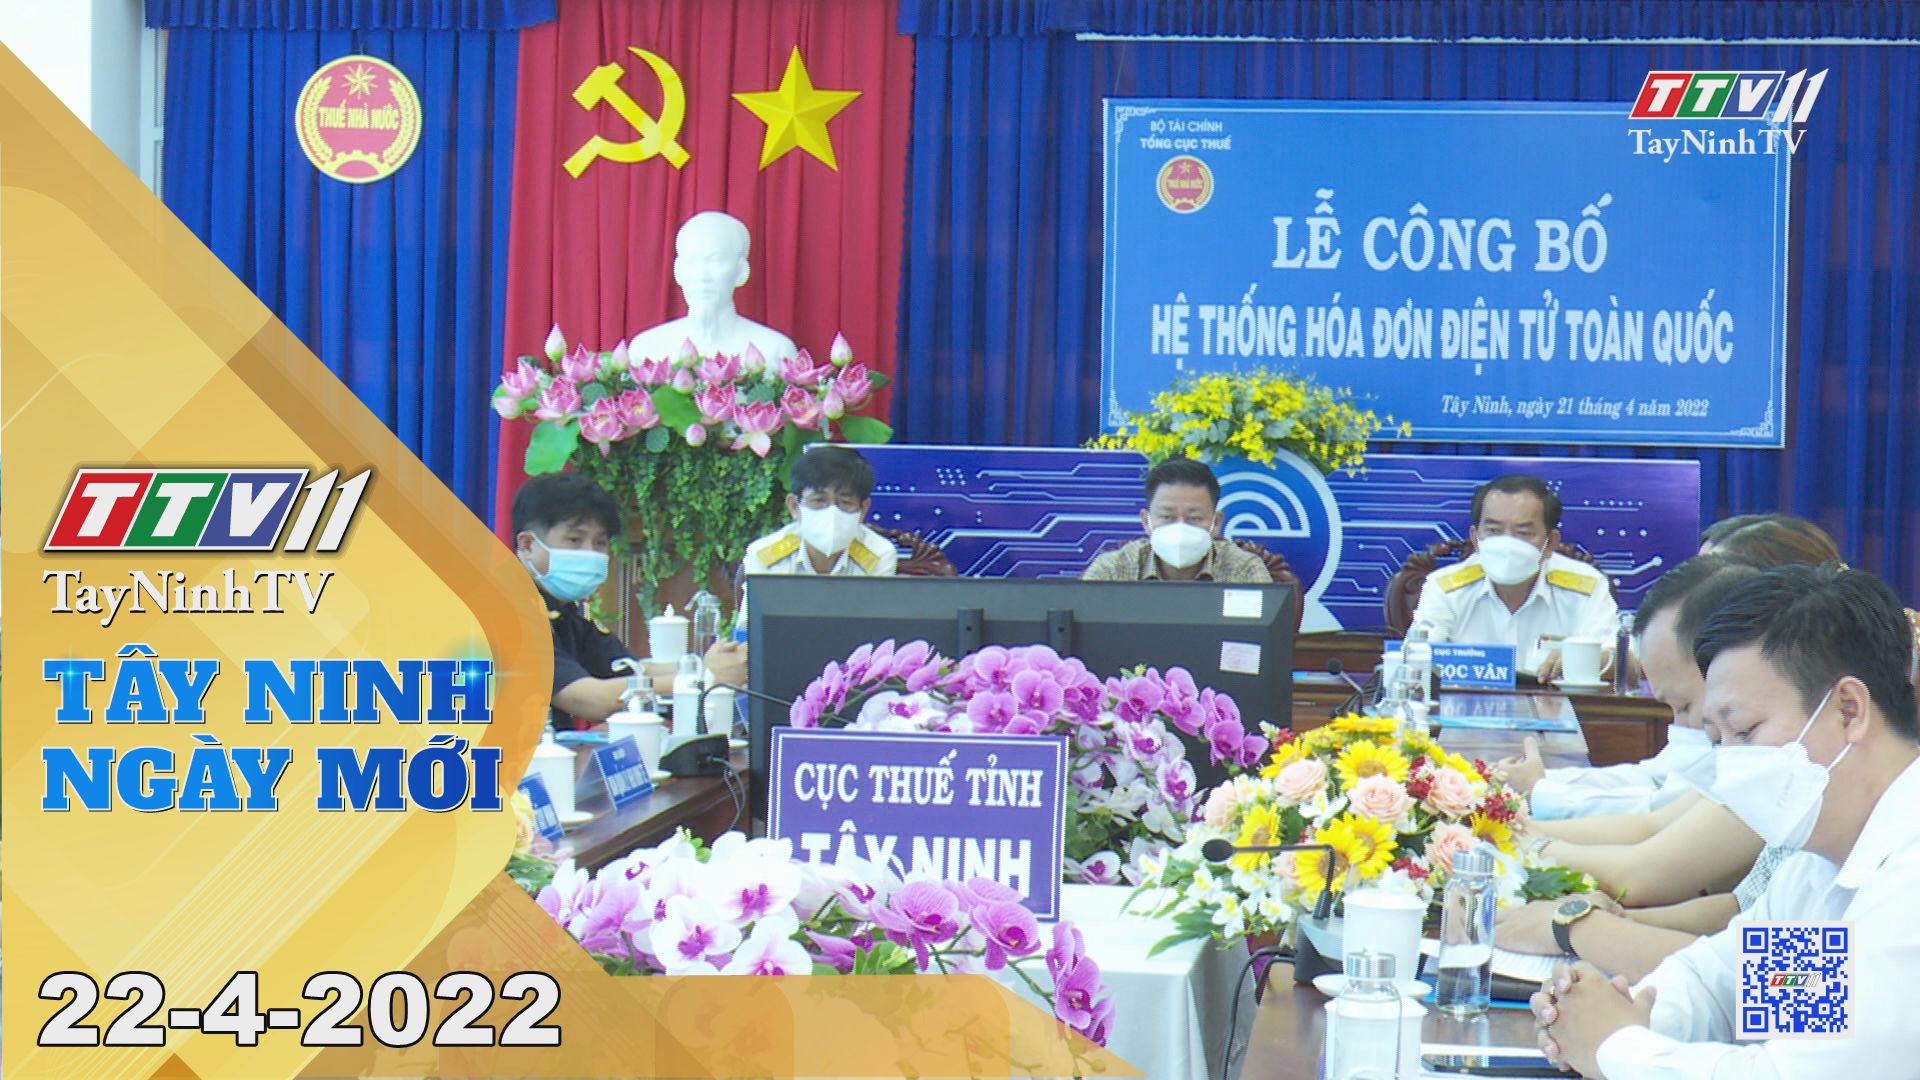 Tây Ninh ngày mới 22-4-2022| Tin tức hôm nay | TayNinhTV